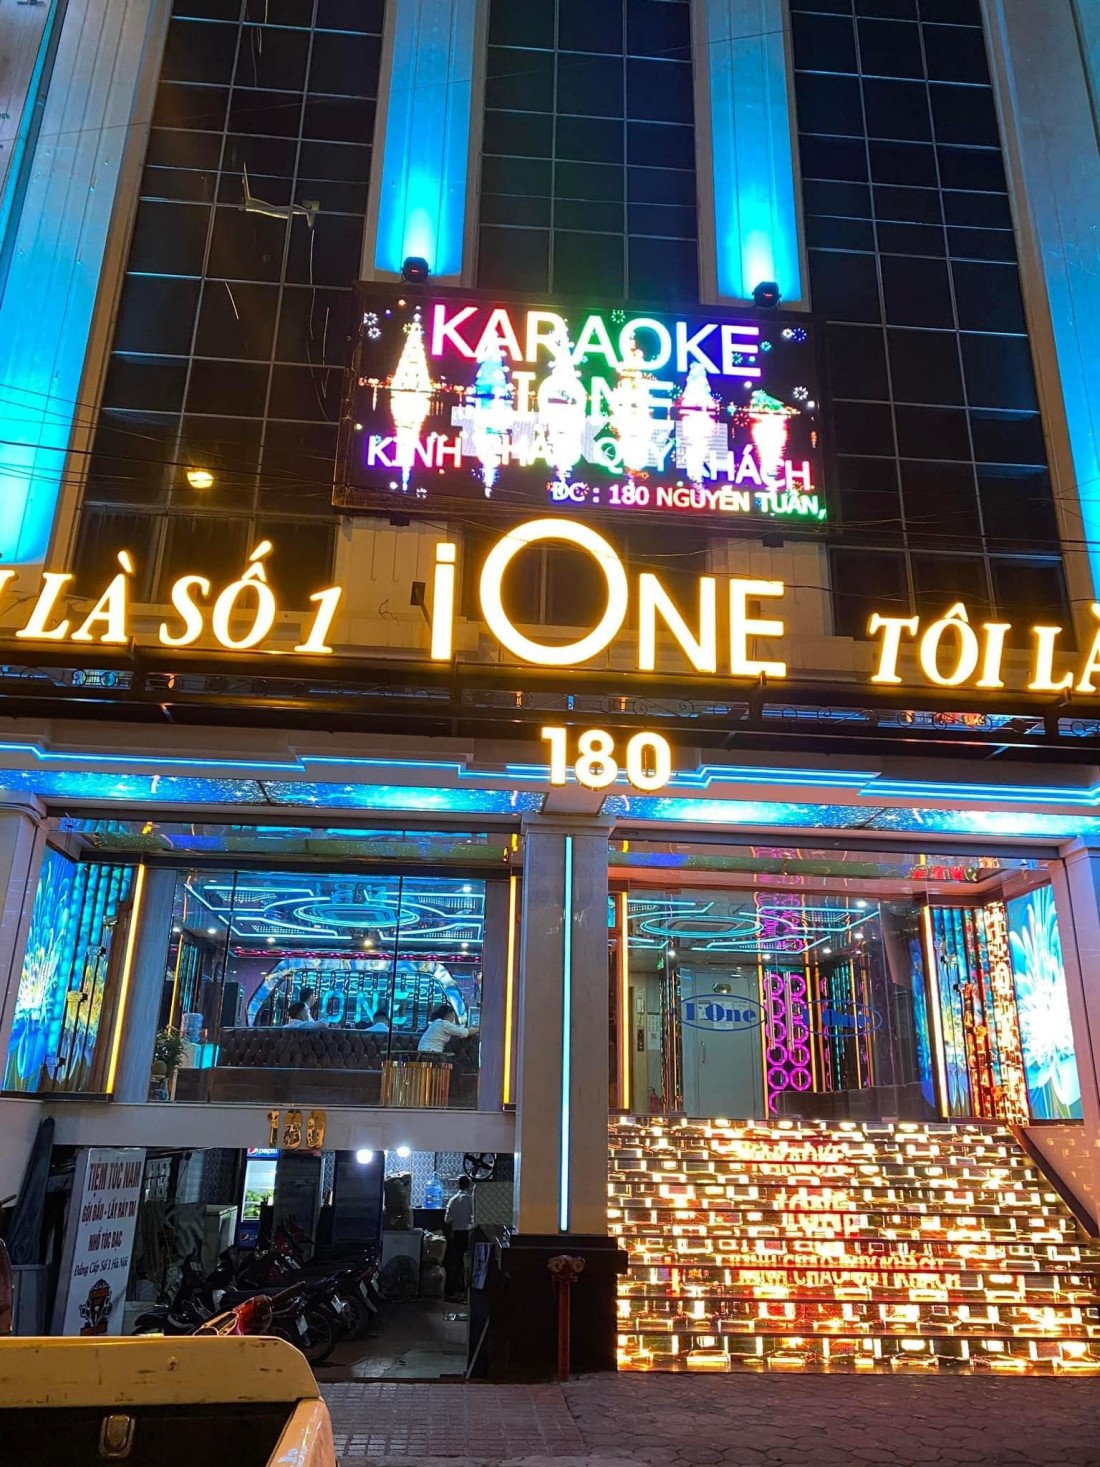  Quán karaoke I-one (178 – 180 Nguyễn Tuân) bị tạm đình chỉ khu vực tầng 5, 6 và tum do cải tạo công trình khi chưa có văn bản thẩm duyệt thiết kế về PCCC.